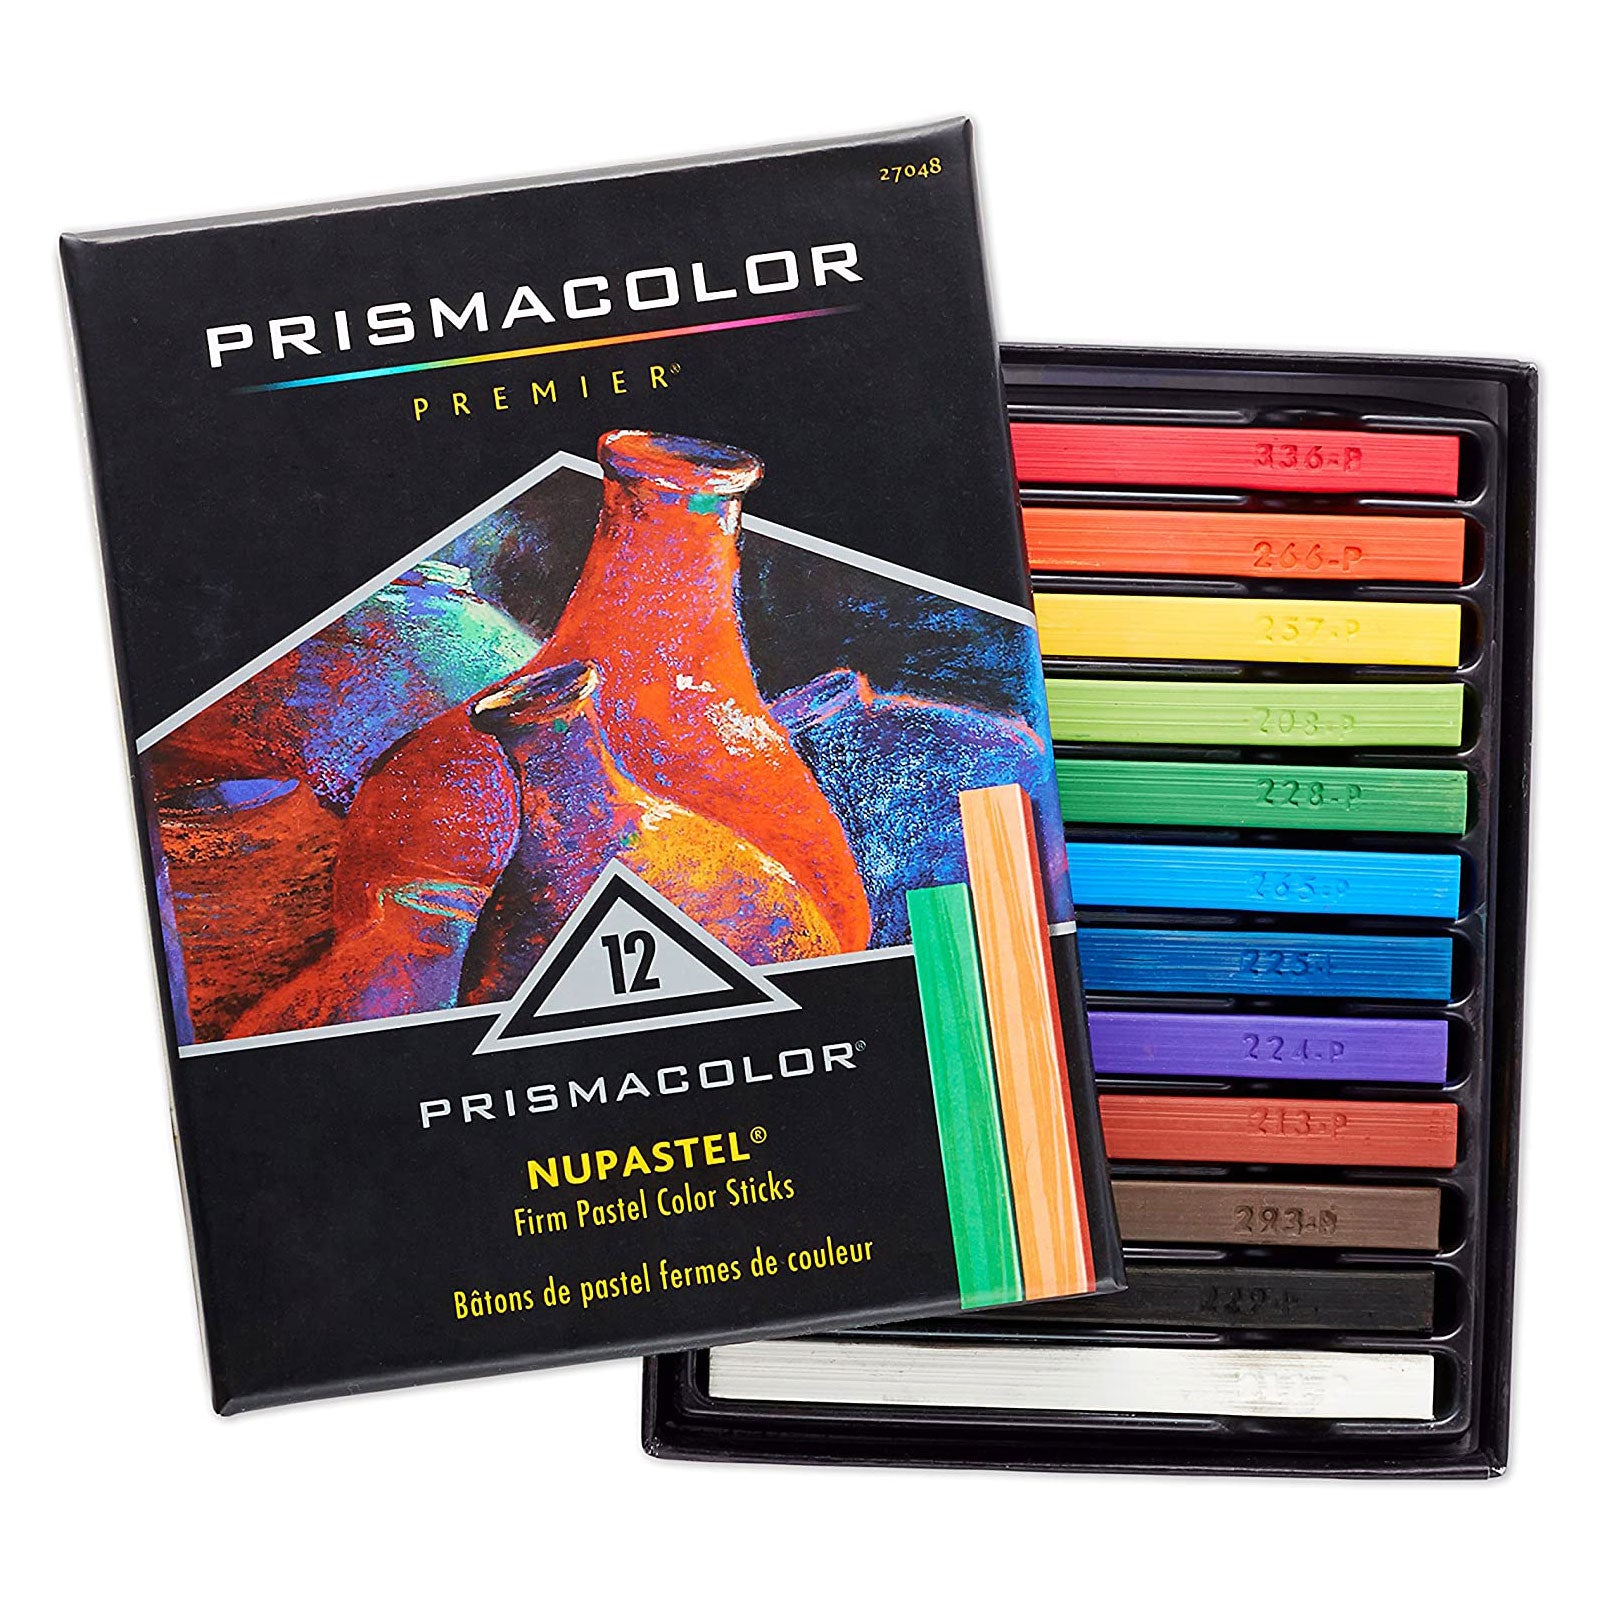 Prismacolor Premier Colored Pencils 12 Set